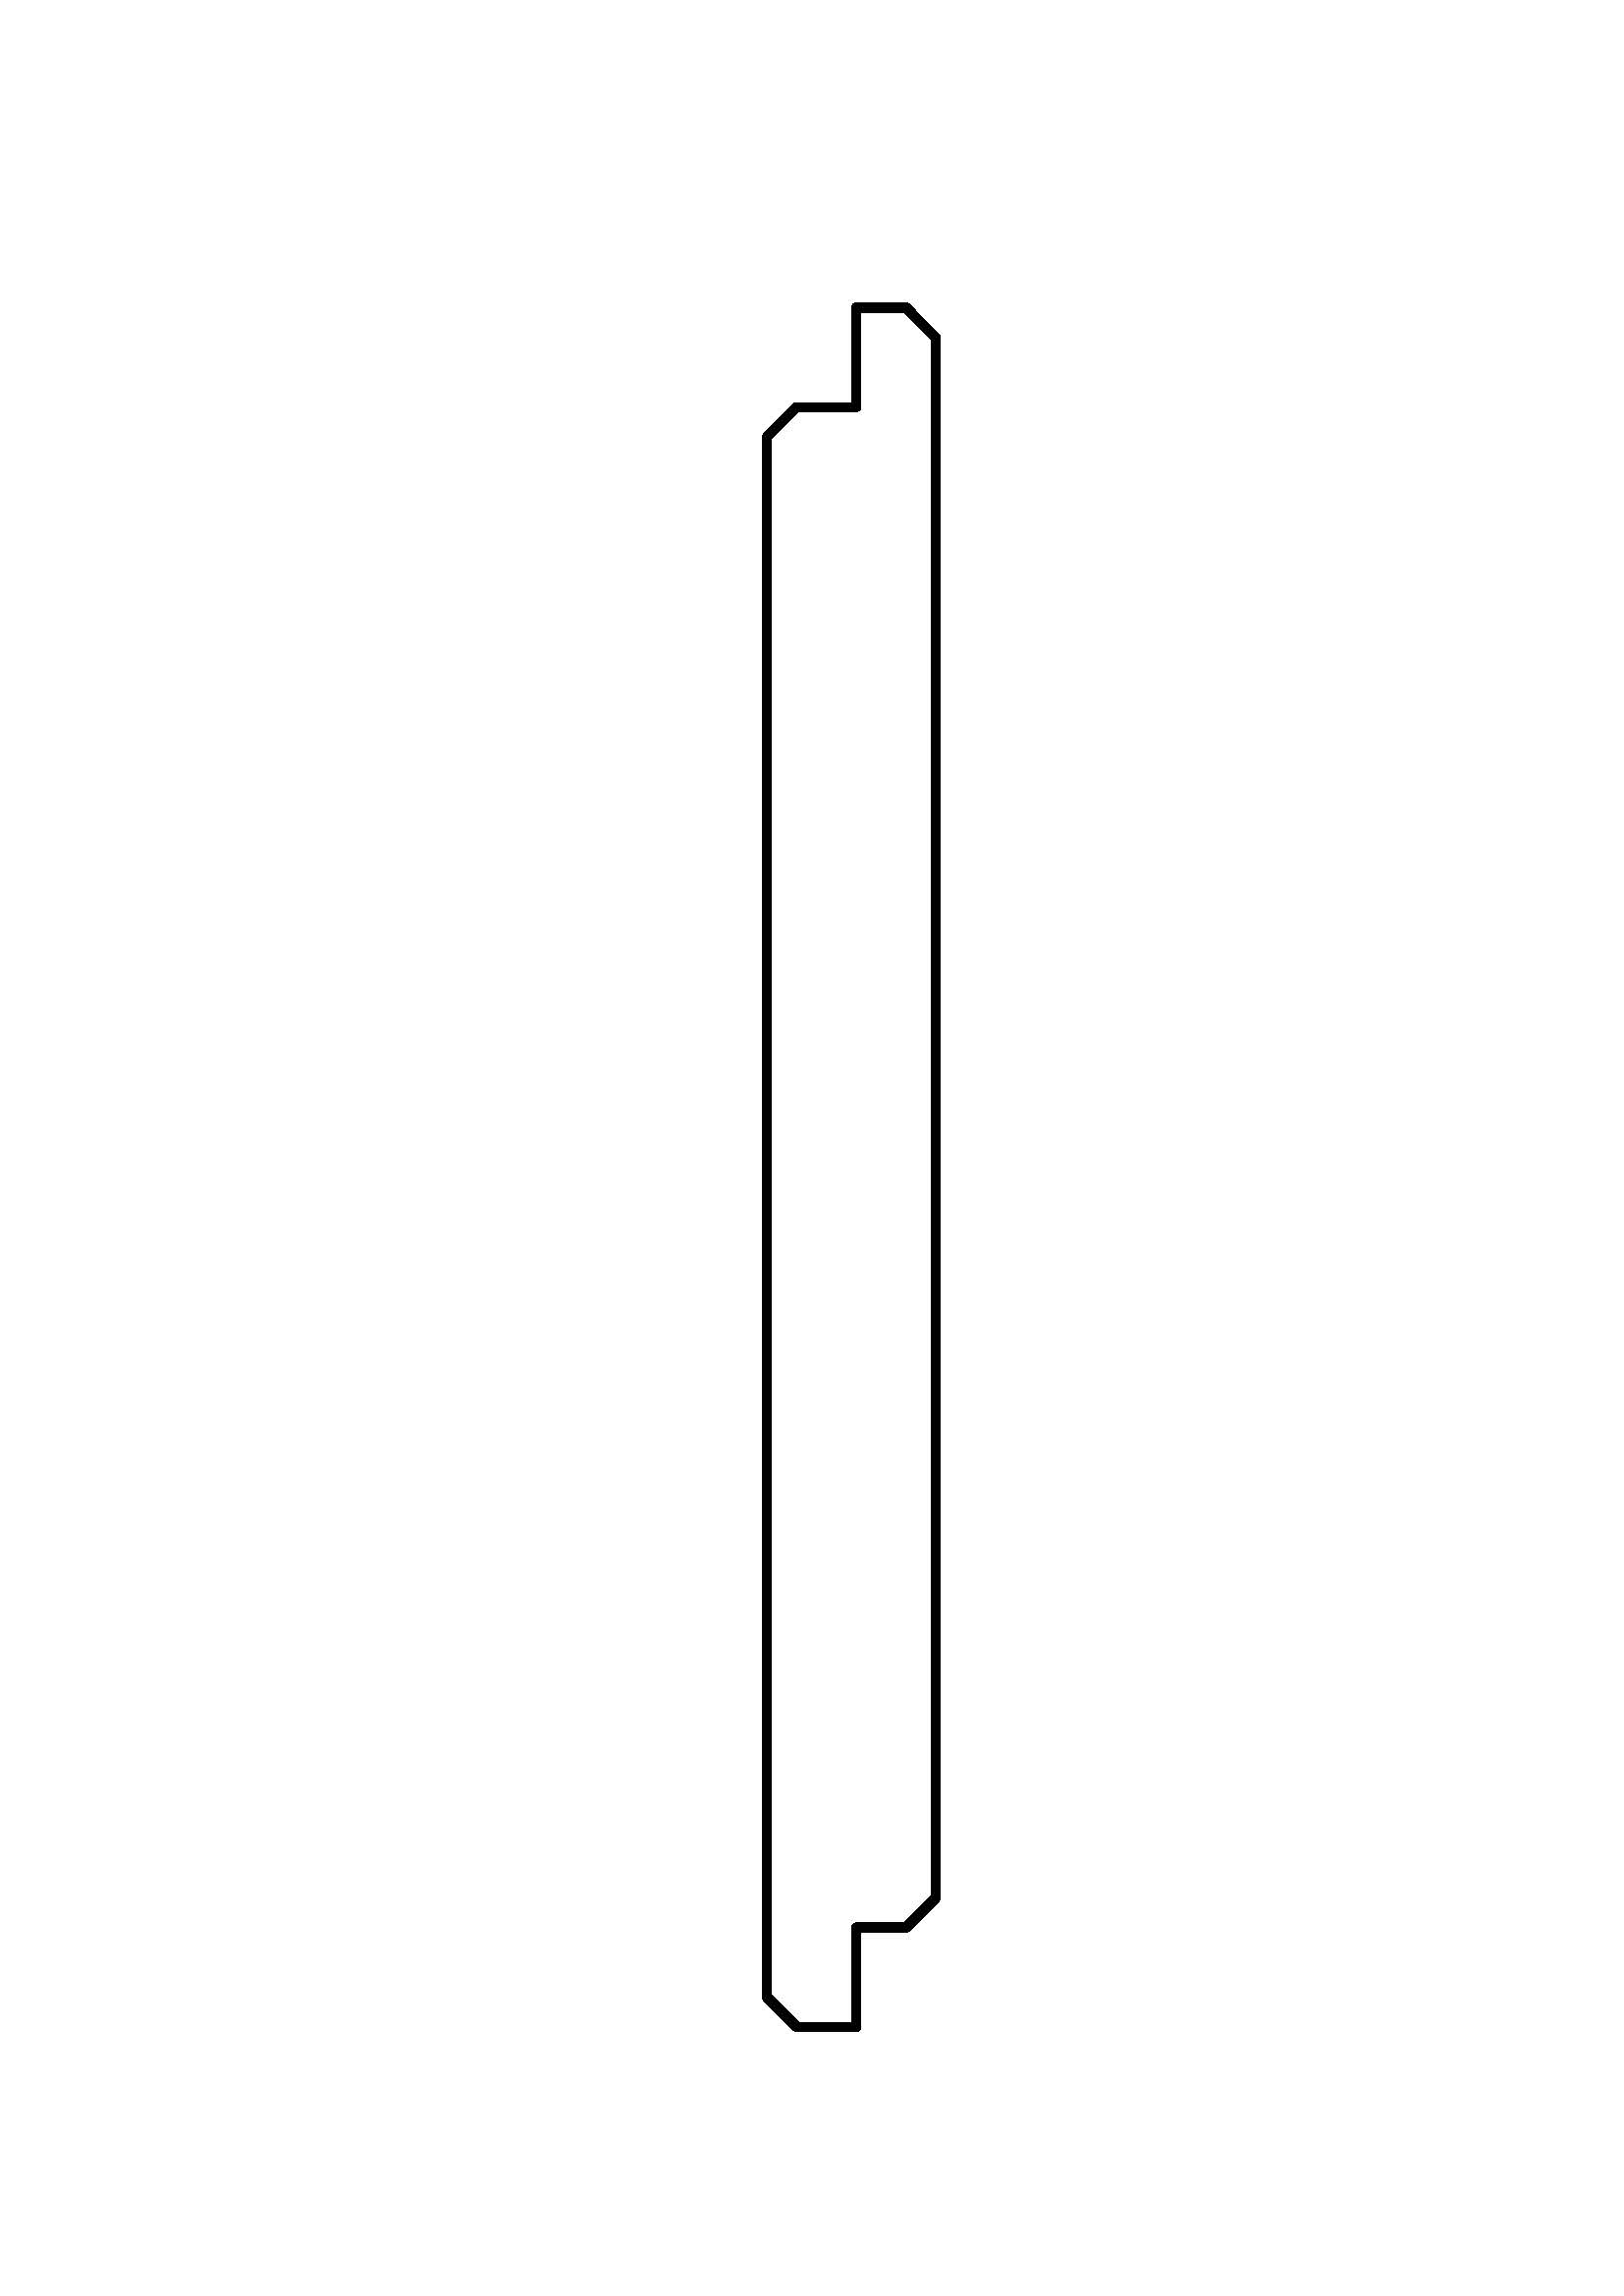 Douglas wisselsponning 1.7x17.5x400cm KD gedroogd 1 zijde glad 1 zijde ruw